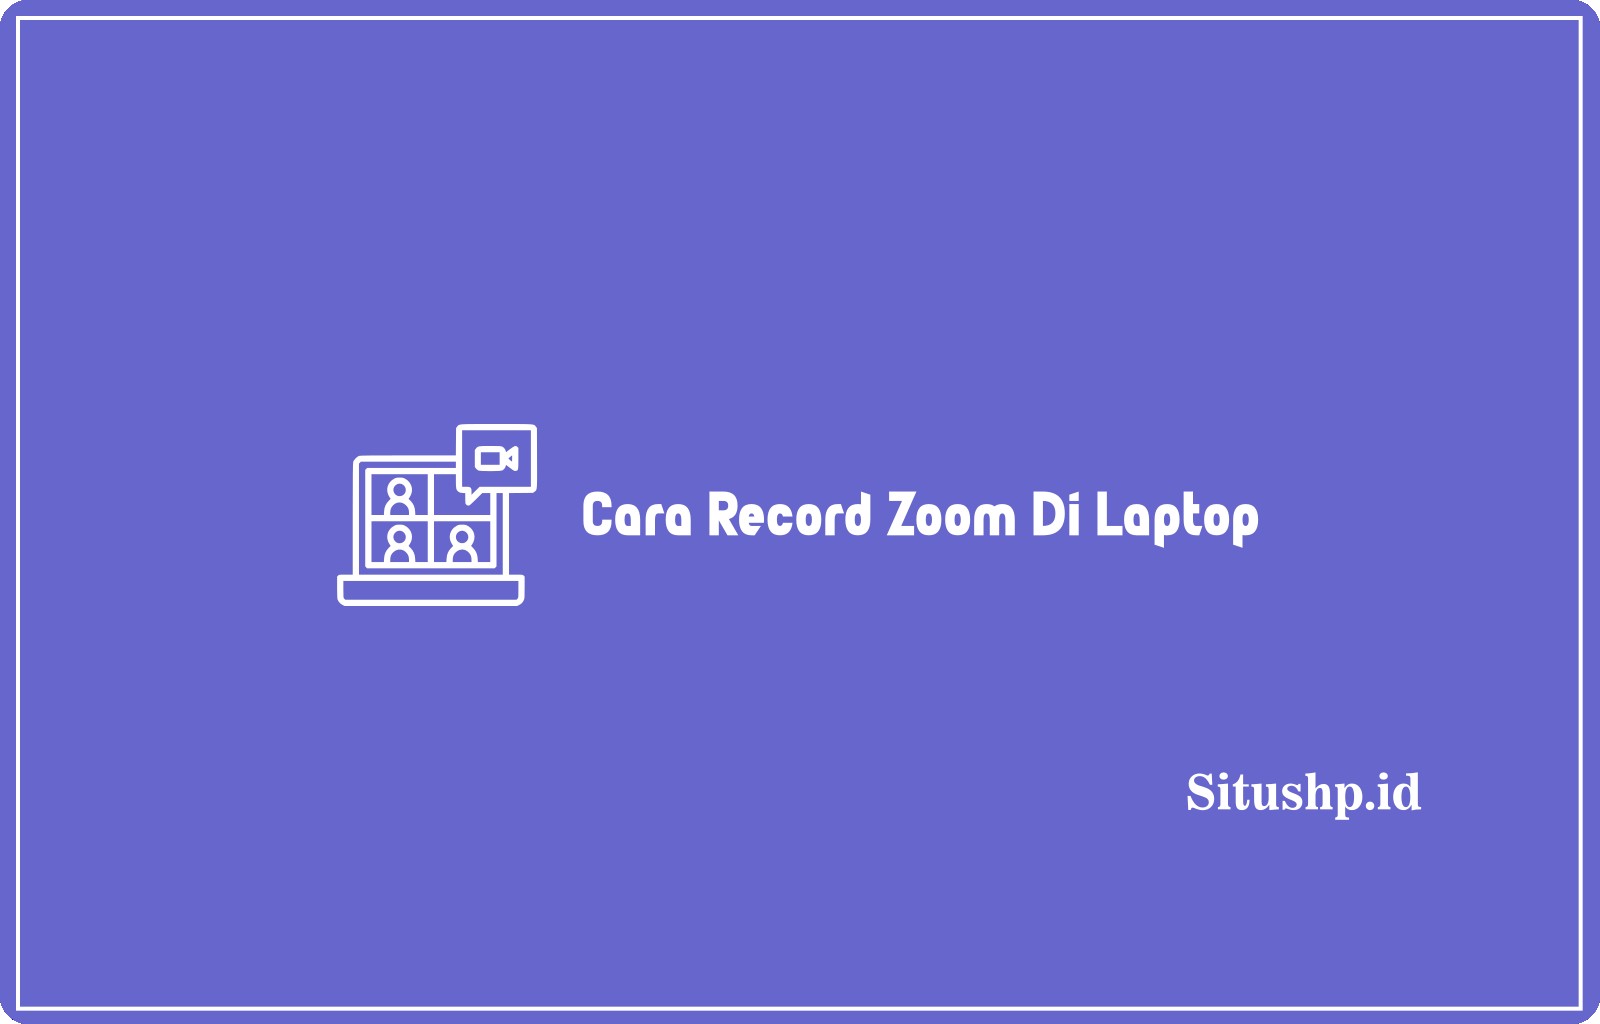 Cara Record Zoom Di Laptop